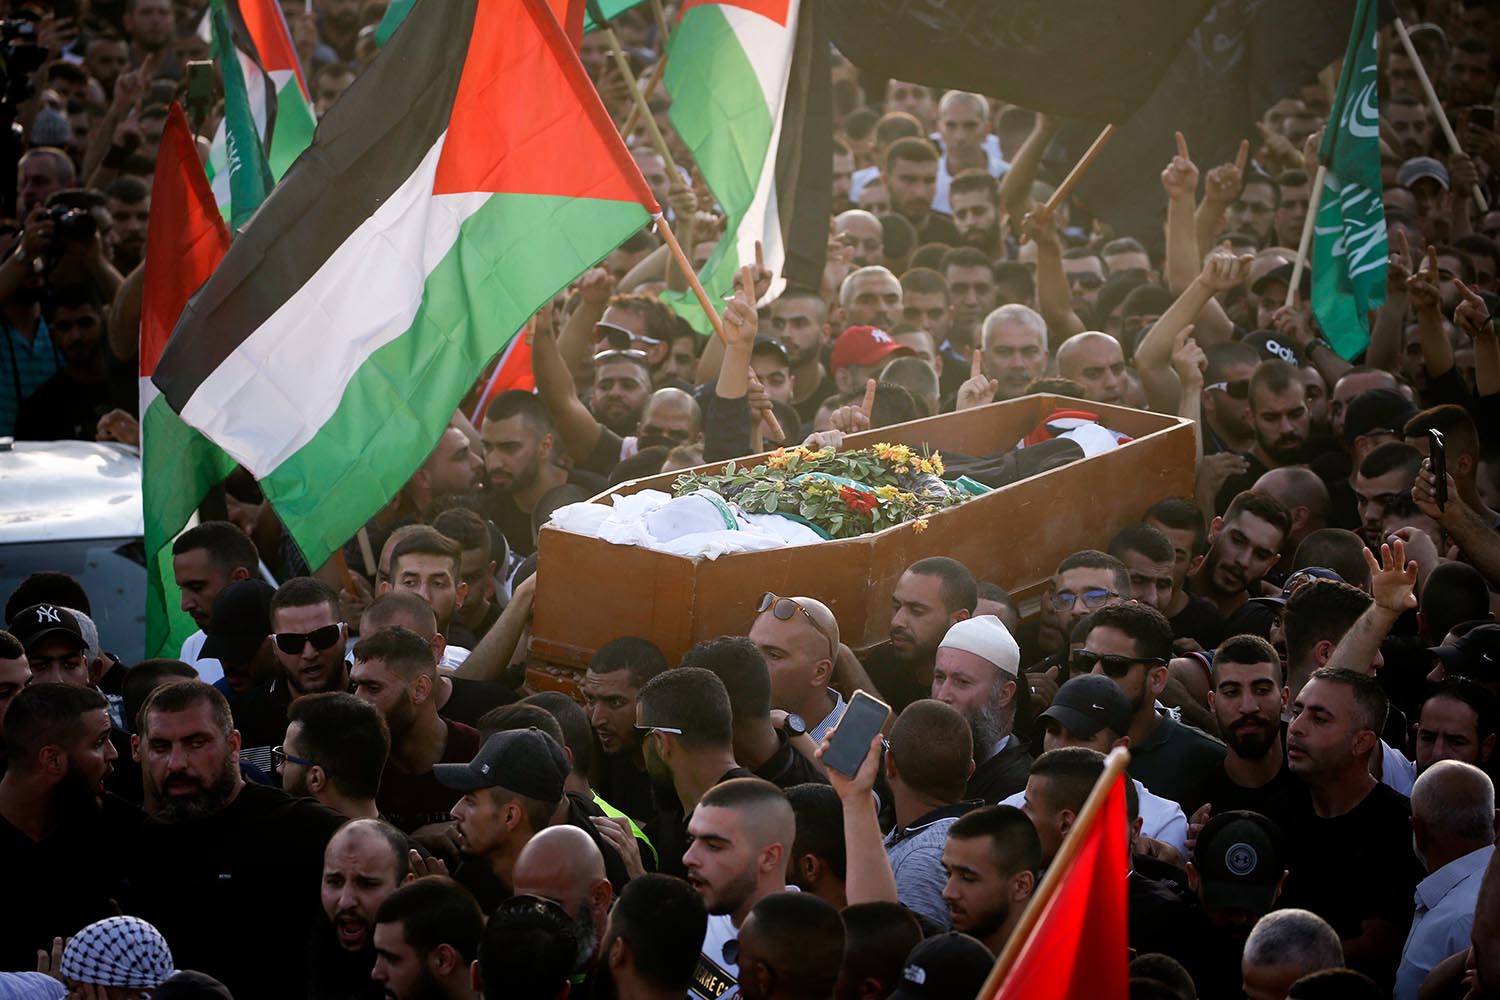 הלווייתו של מוחמד מחאמיד אלכיואן, בן 17, שנהרג מירי במהלך הפגנה באום אל פחם (צילום: ג'מאל עוואד, פלאש 90)